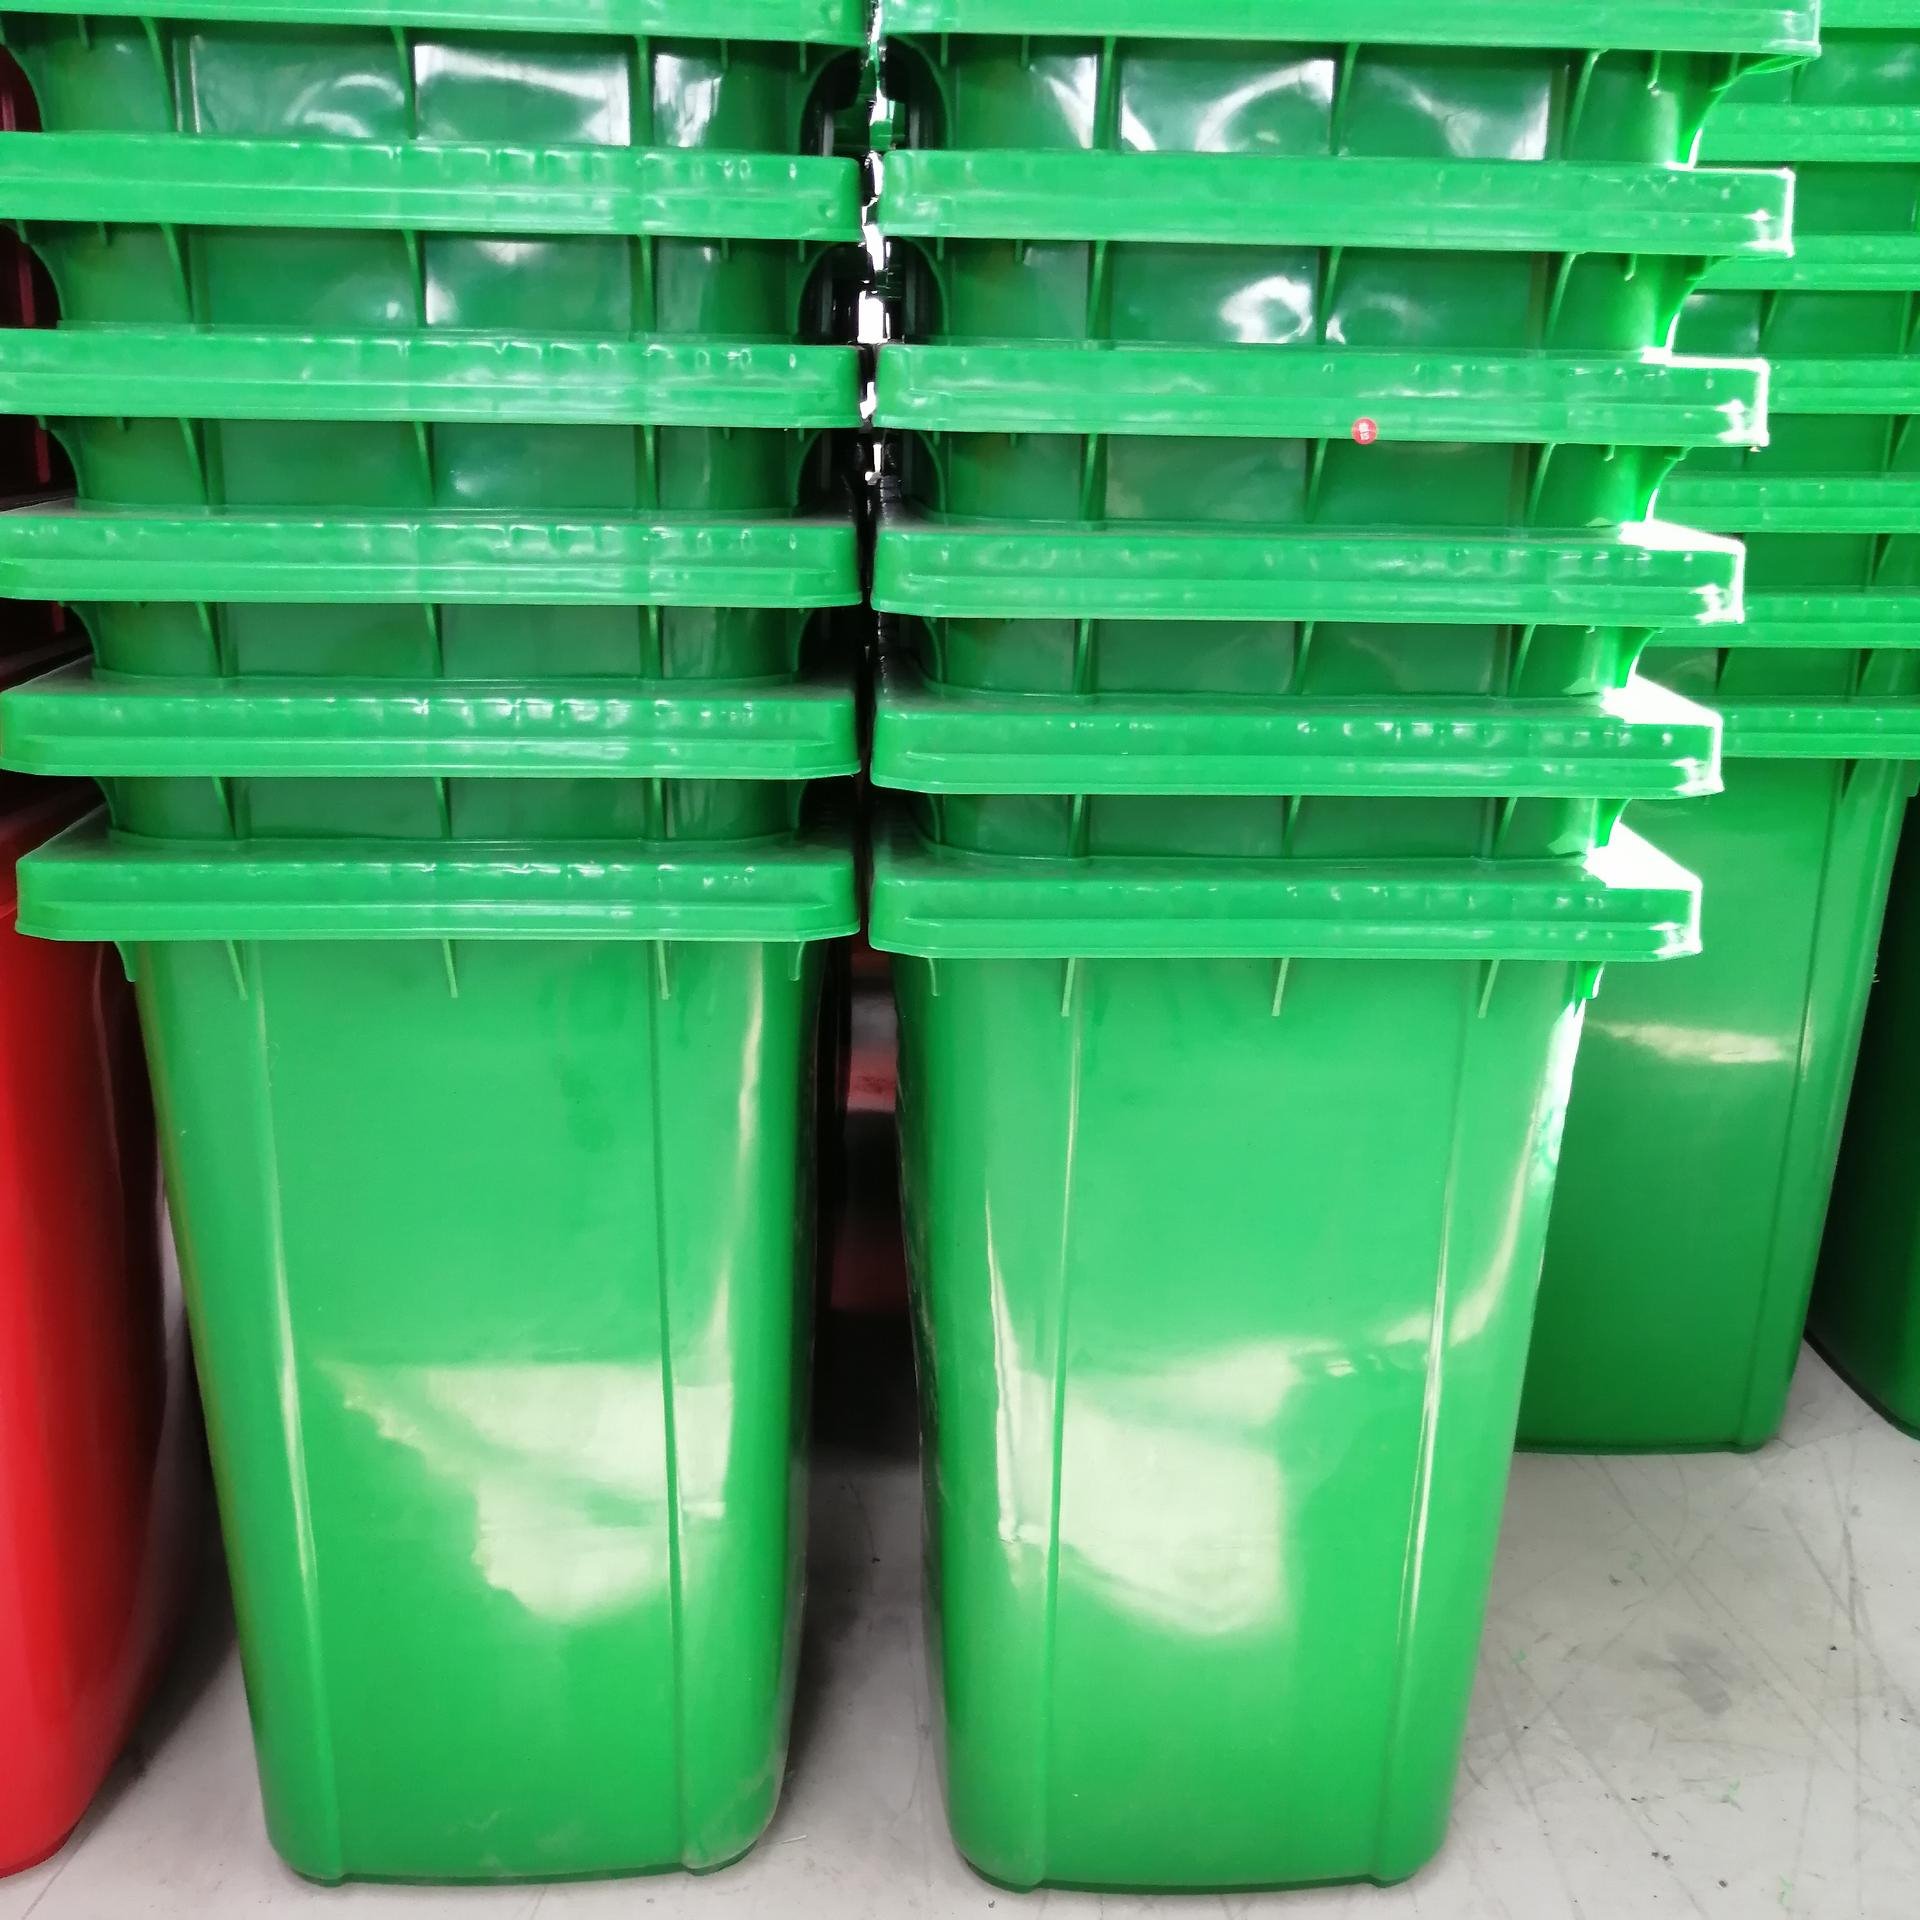 湖南岳阳塑料垃圾桶生产厂家销售240L塑料垃圾桶  户外塑料垃圾桶  240L塑料挂车垃圾桶图片